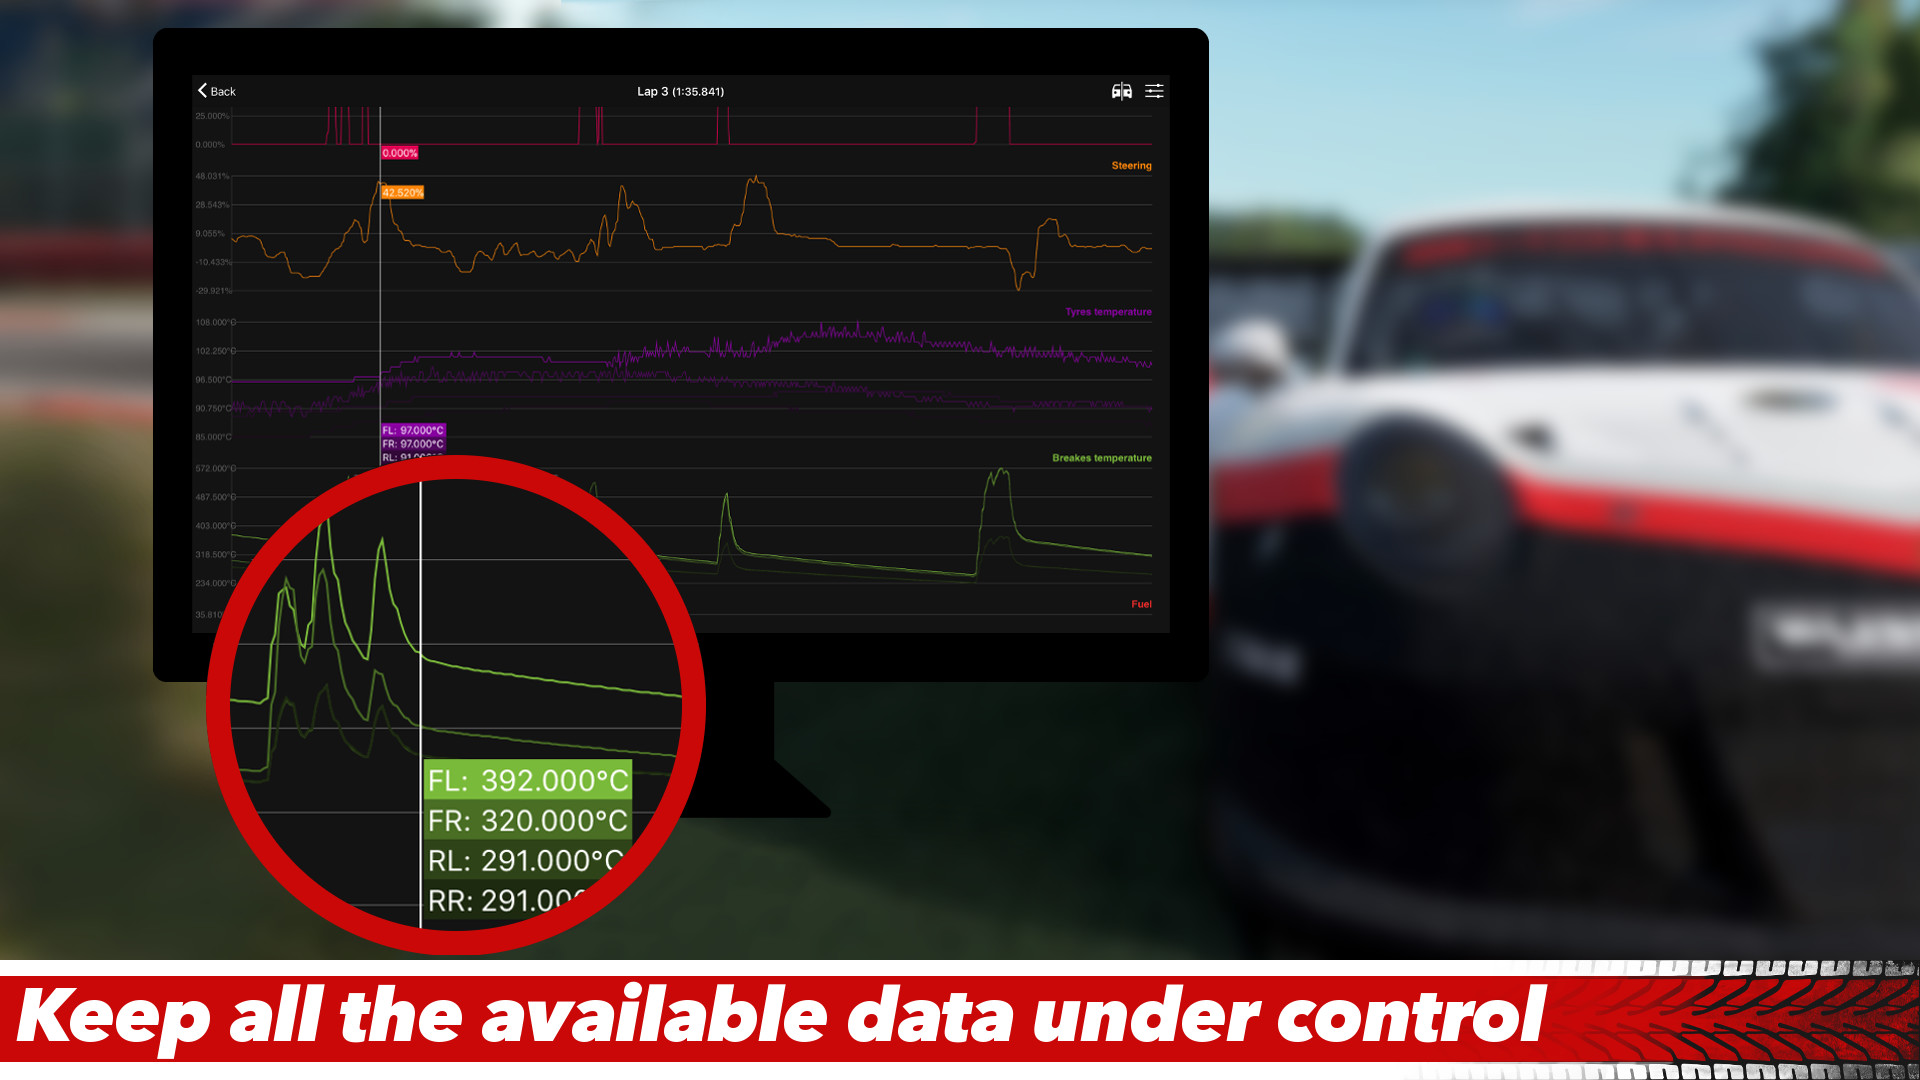 Sim Racing Telemetry screenshot